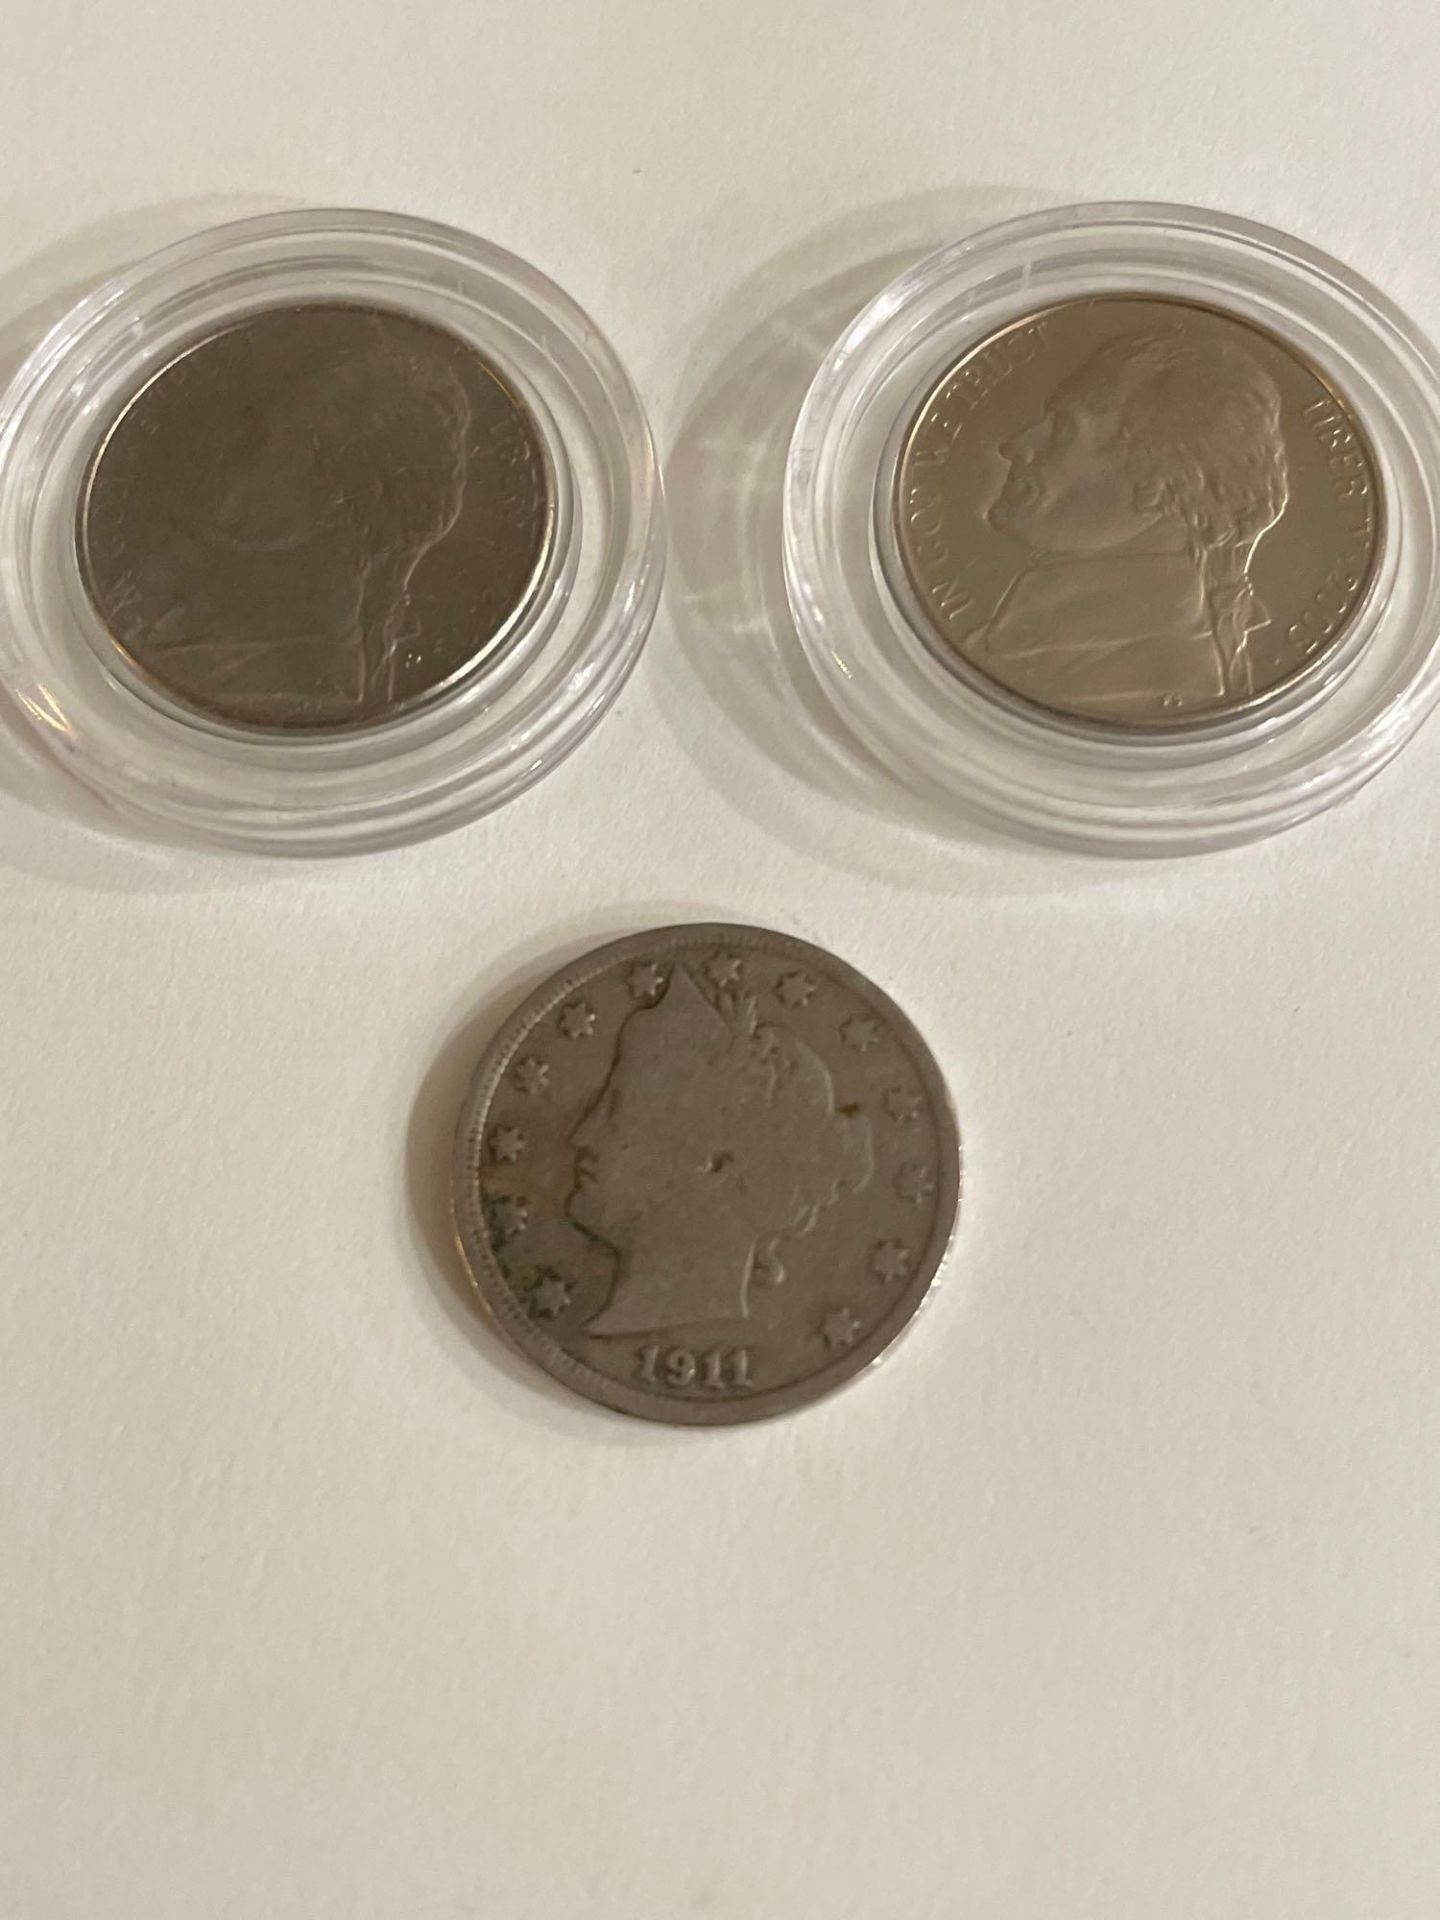 "V" Nickels Last 3 years, 1911 V Nickel, 2003 Uncirculated nickels - Image 6 of 7